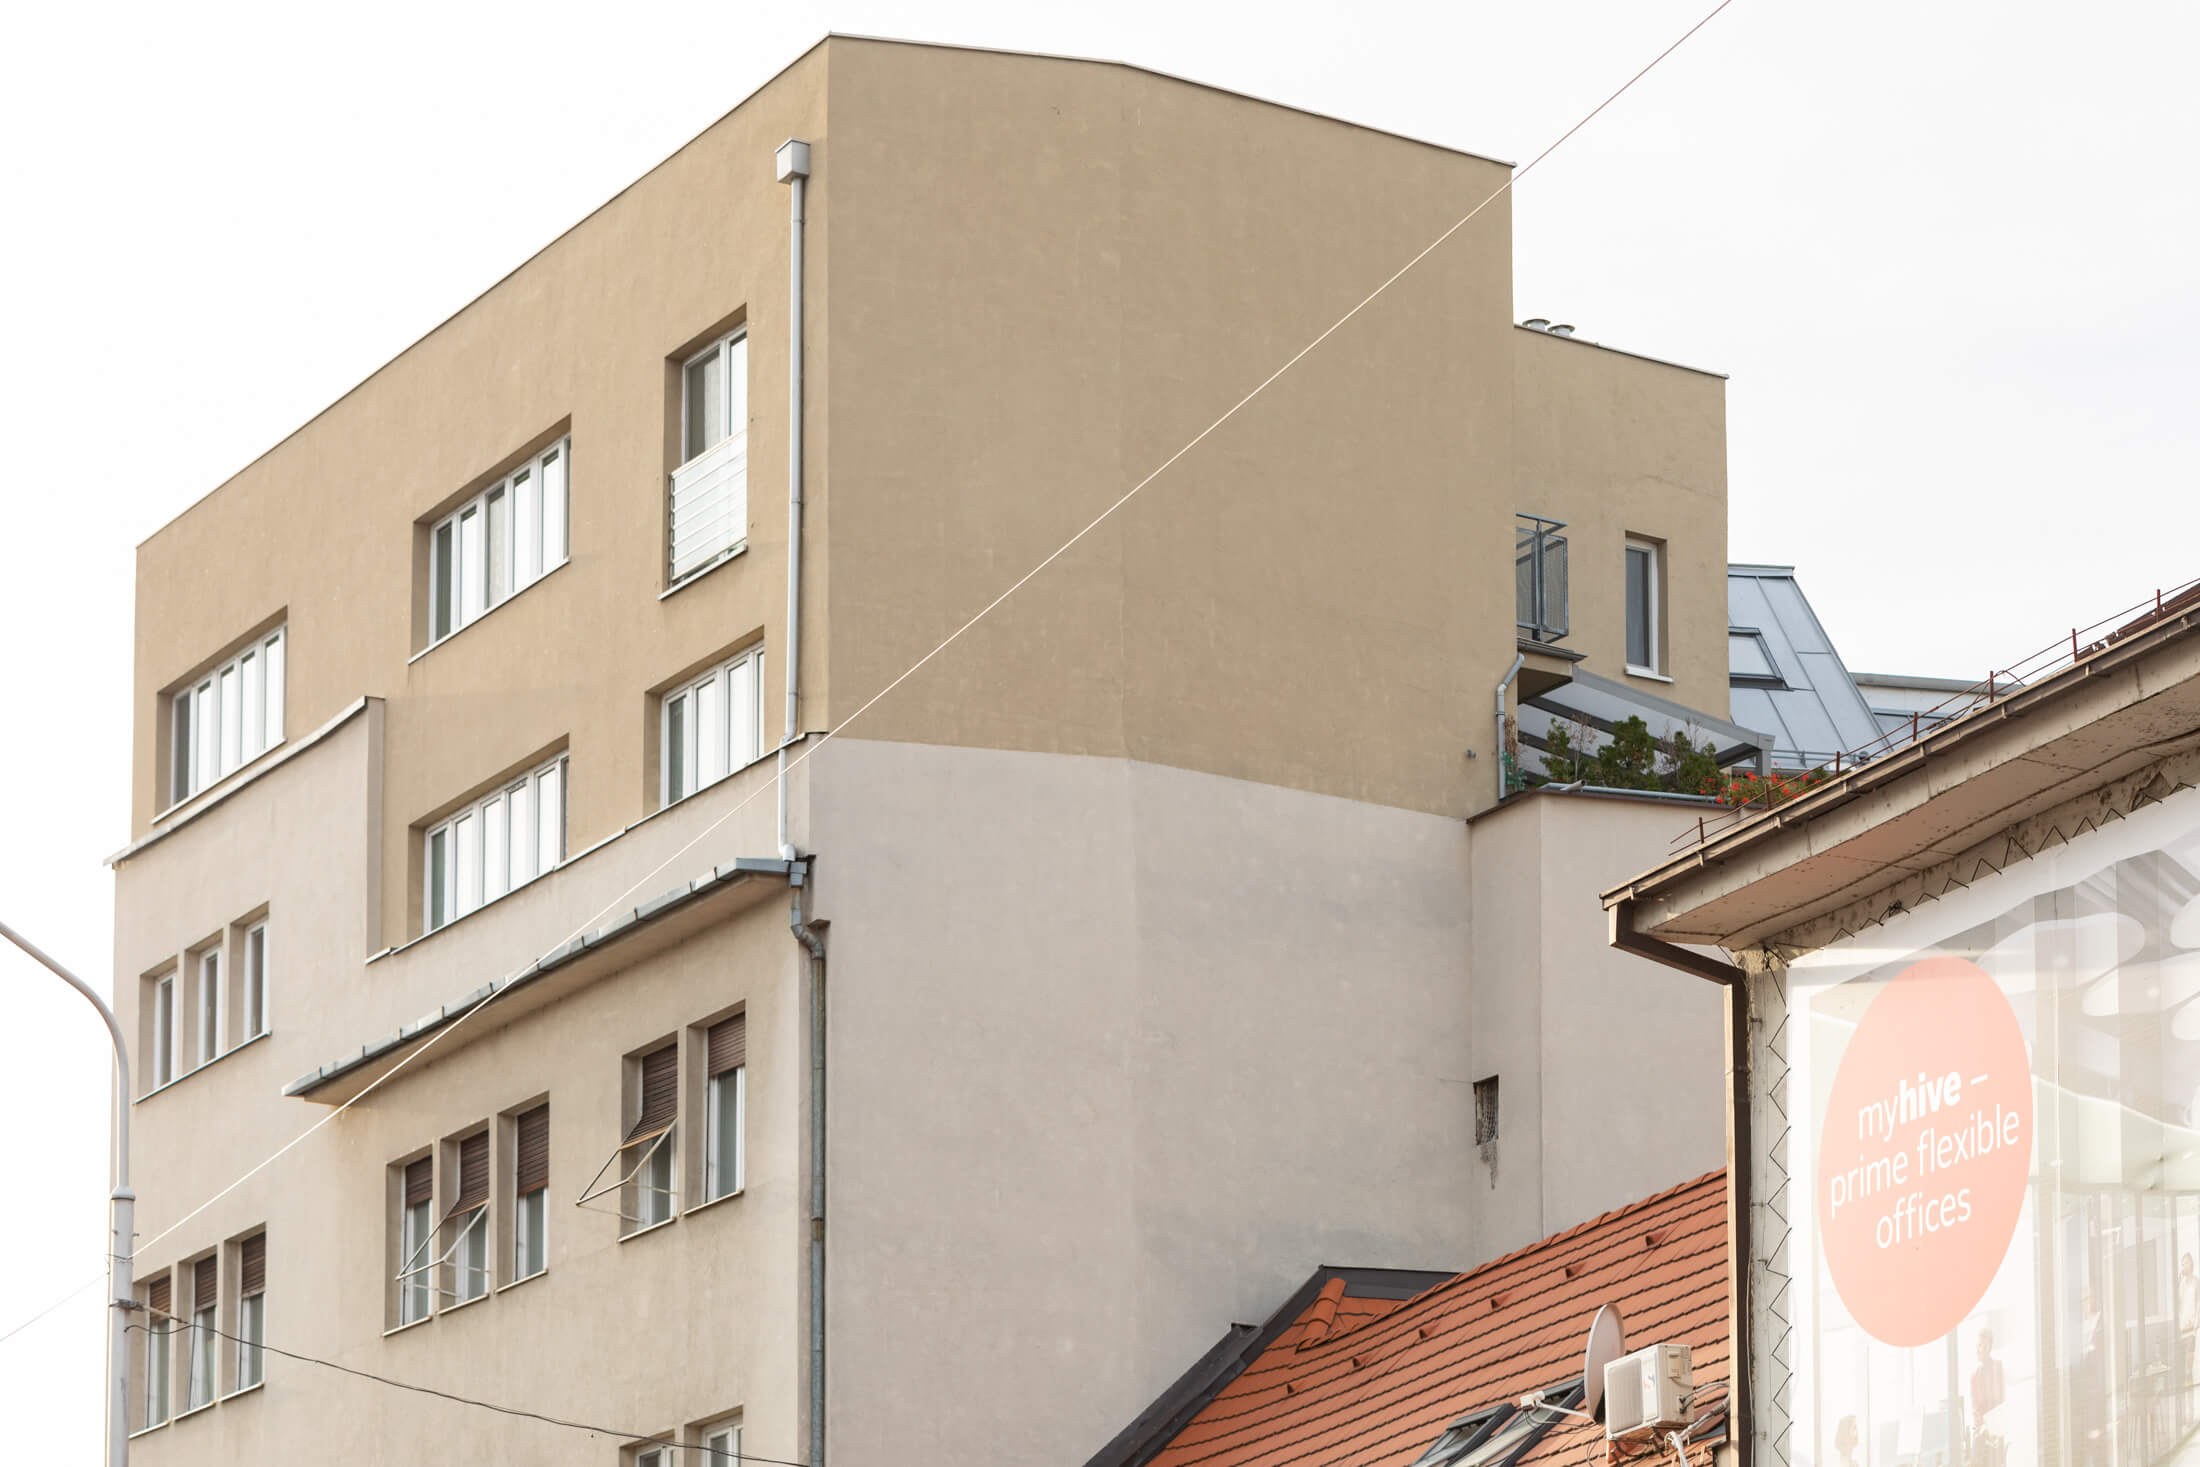 Exkluzívna novostavba na predaj, 3 izbový luxusný byt, Staré Mesto, Konventná, úžitková 146,18m2, najvyššie poschodie, výhľad na celú Bratislavu-9